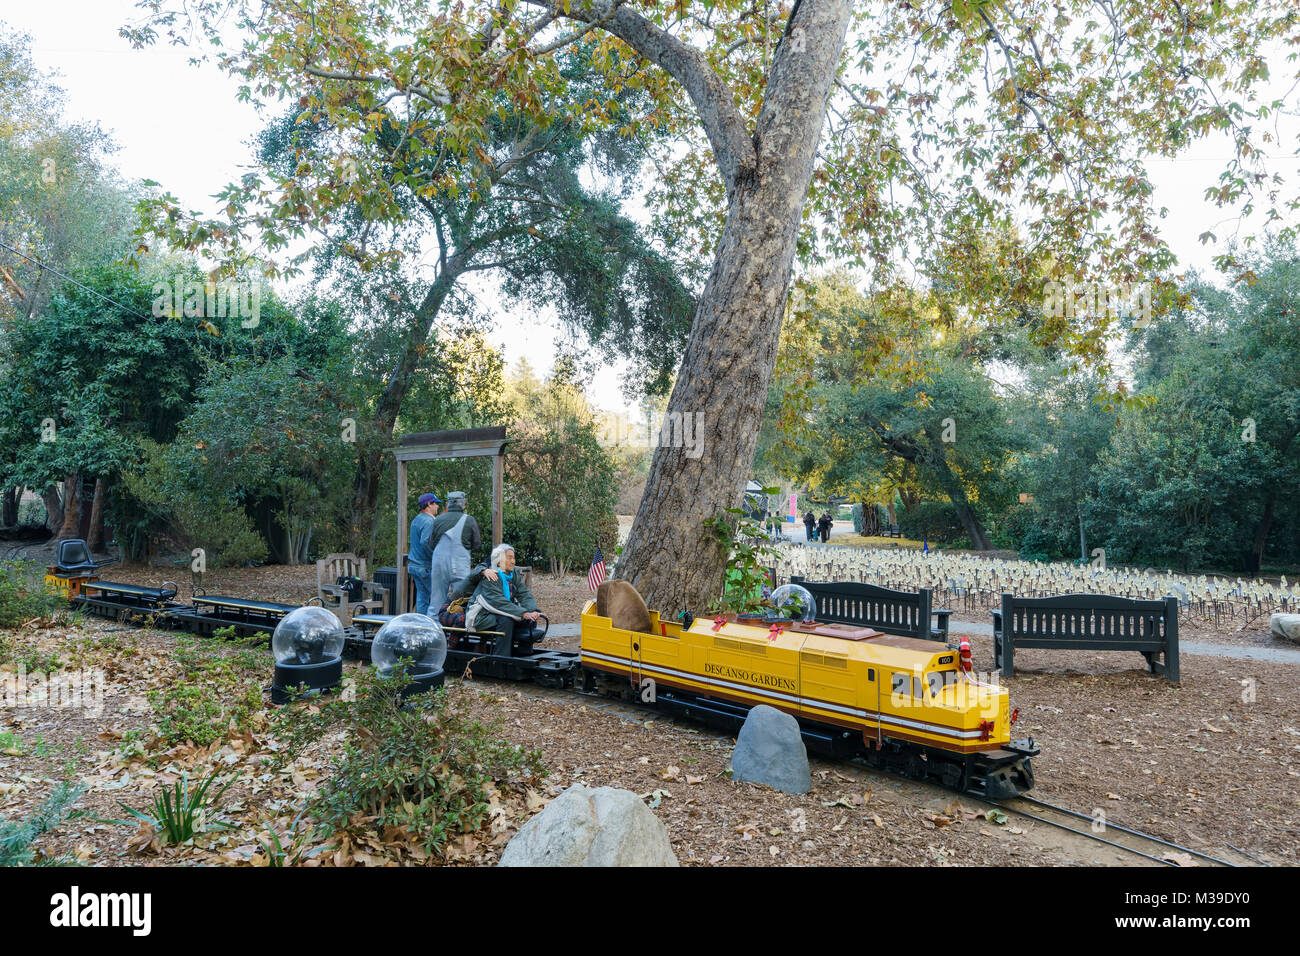 Los Angeles, 16 dic: piccolo treno nel giardino Descanso sul dicembre 16, 2017 a Los Angeles in California Foto Stock